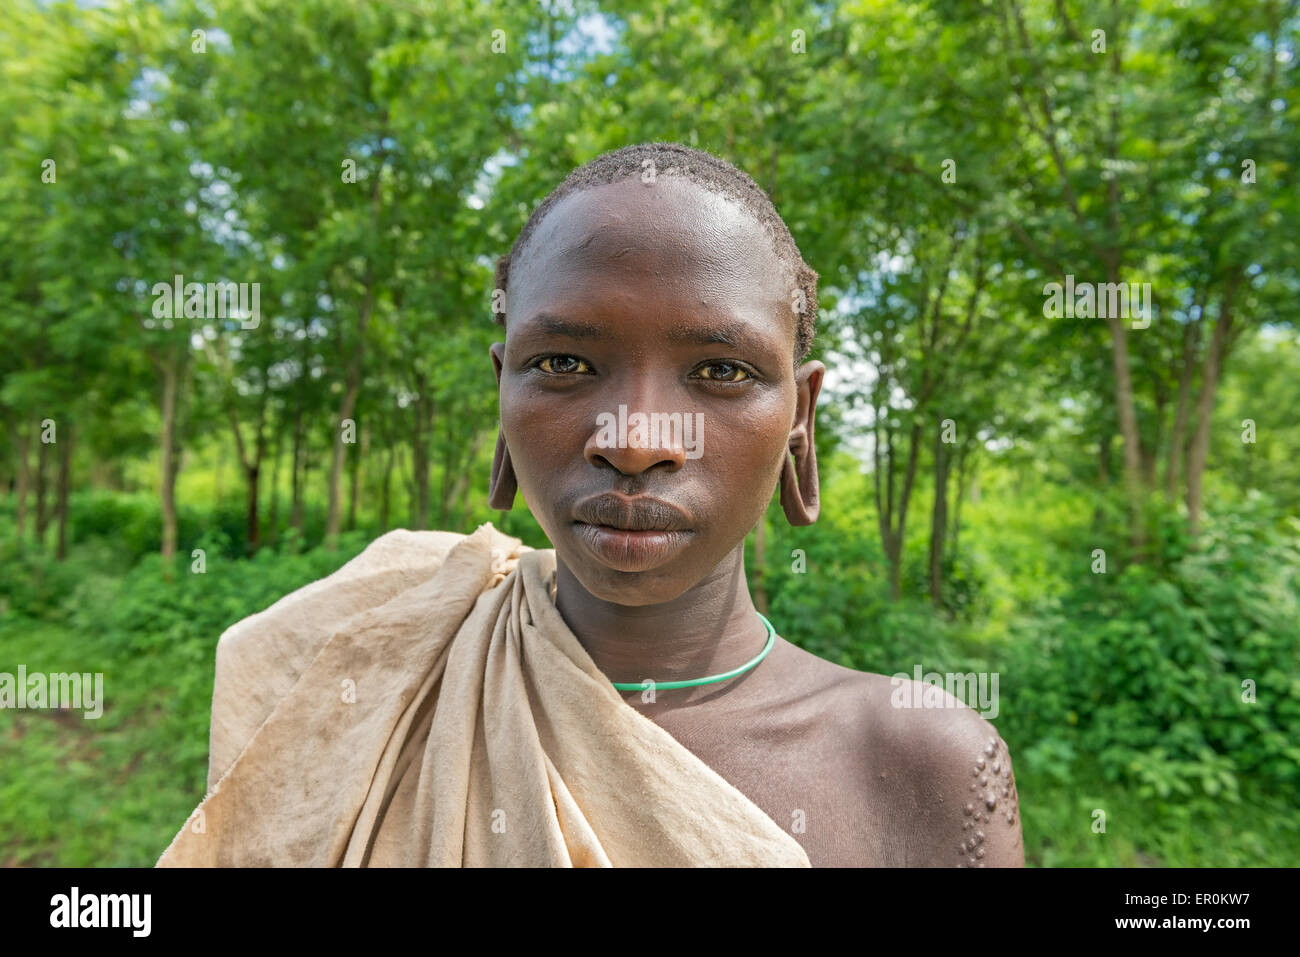 Portrait d'un jeune garçon de la tribu africaine Suri avec oreilles élargie traditionnellement Banque D'Images